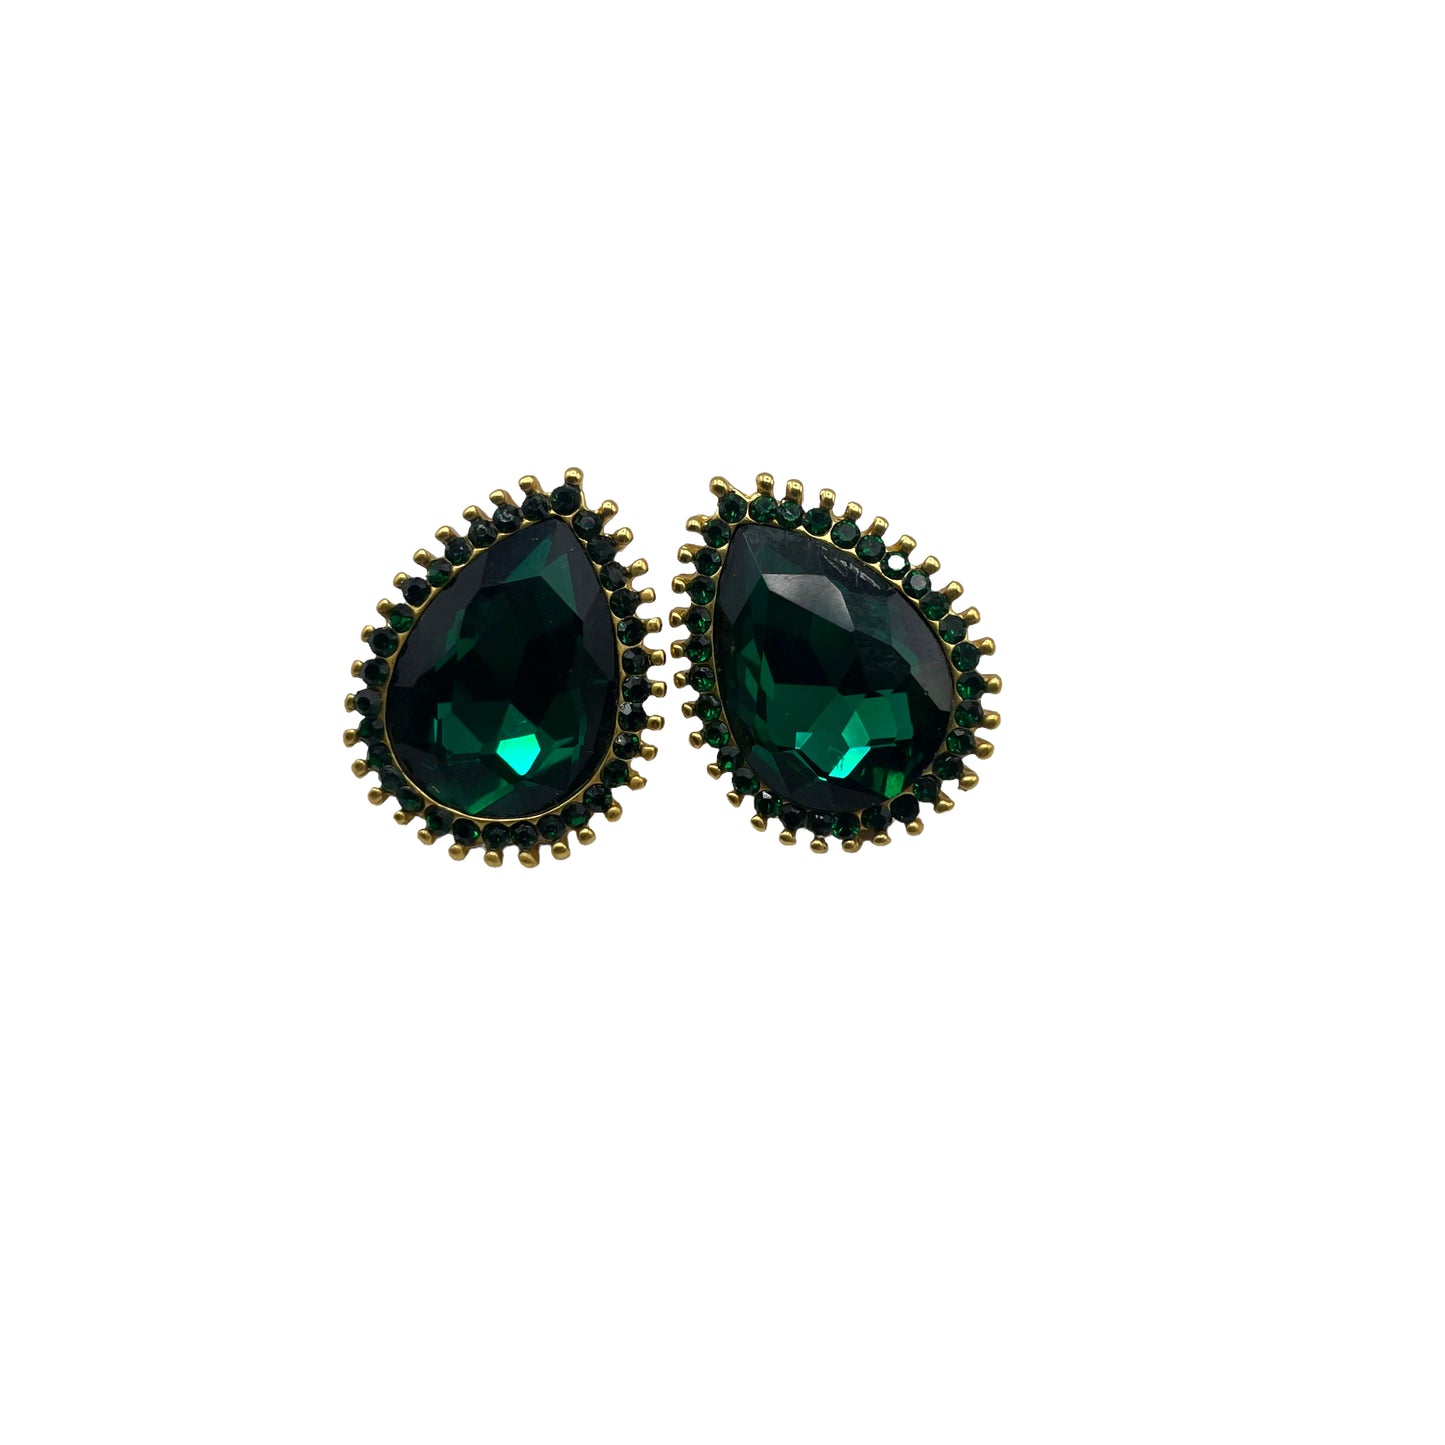 Emerald statement earrings